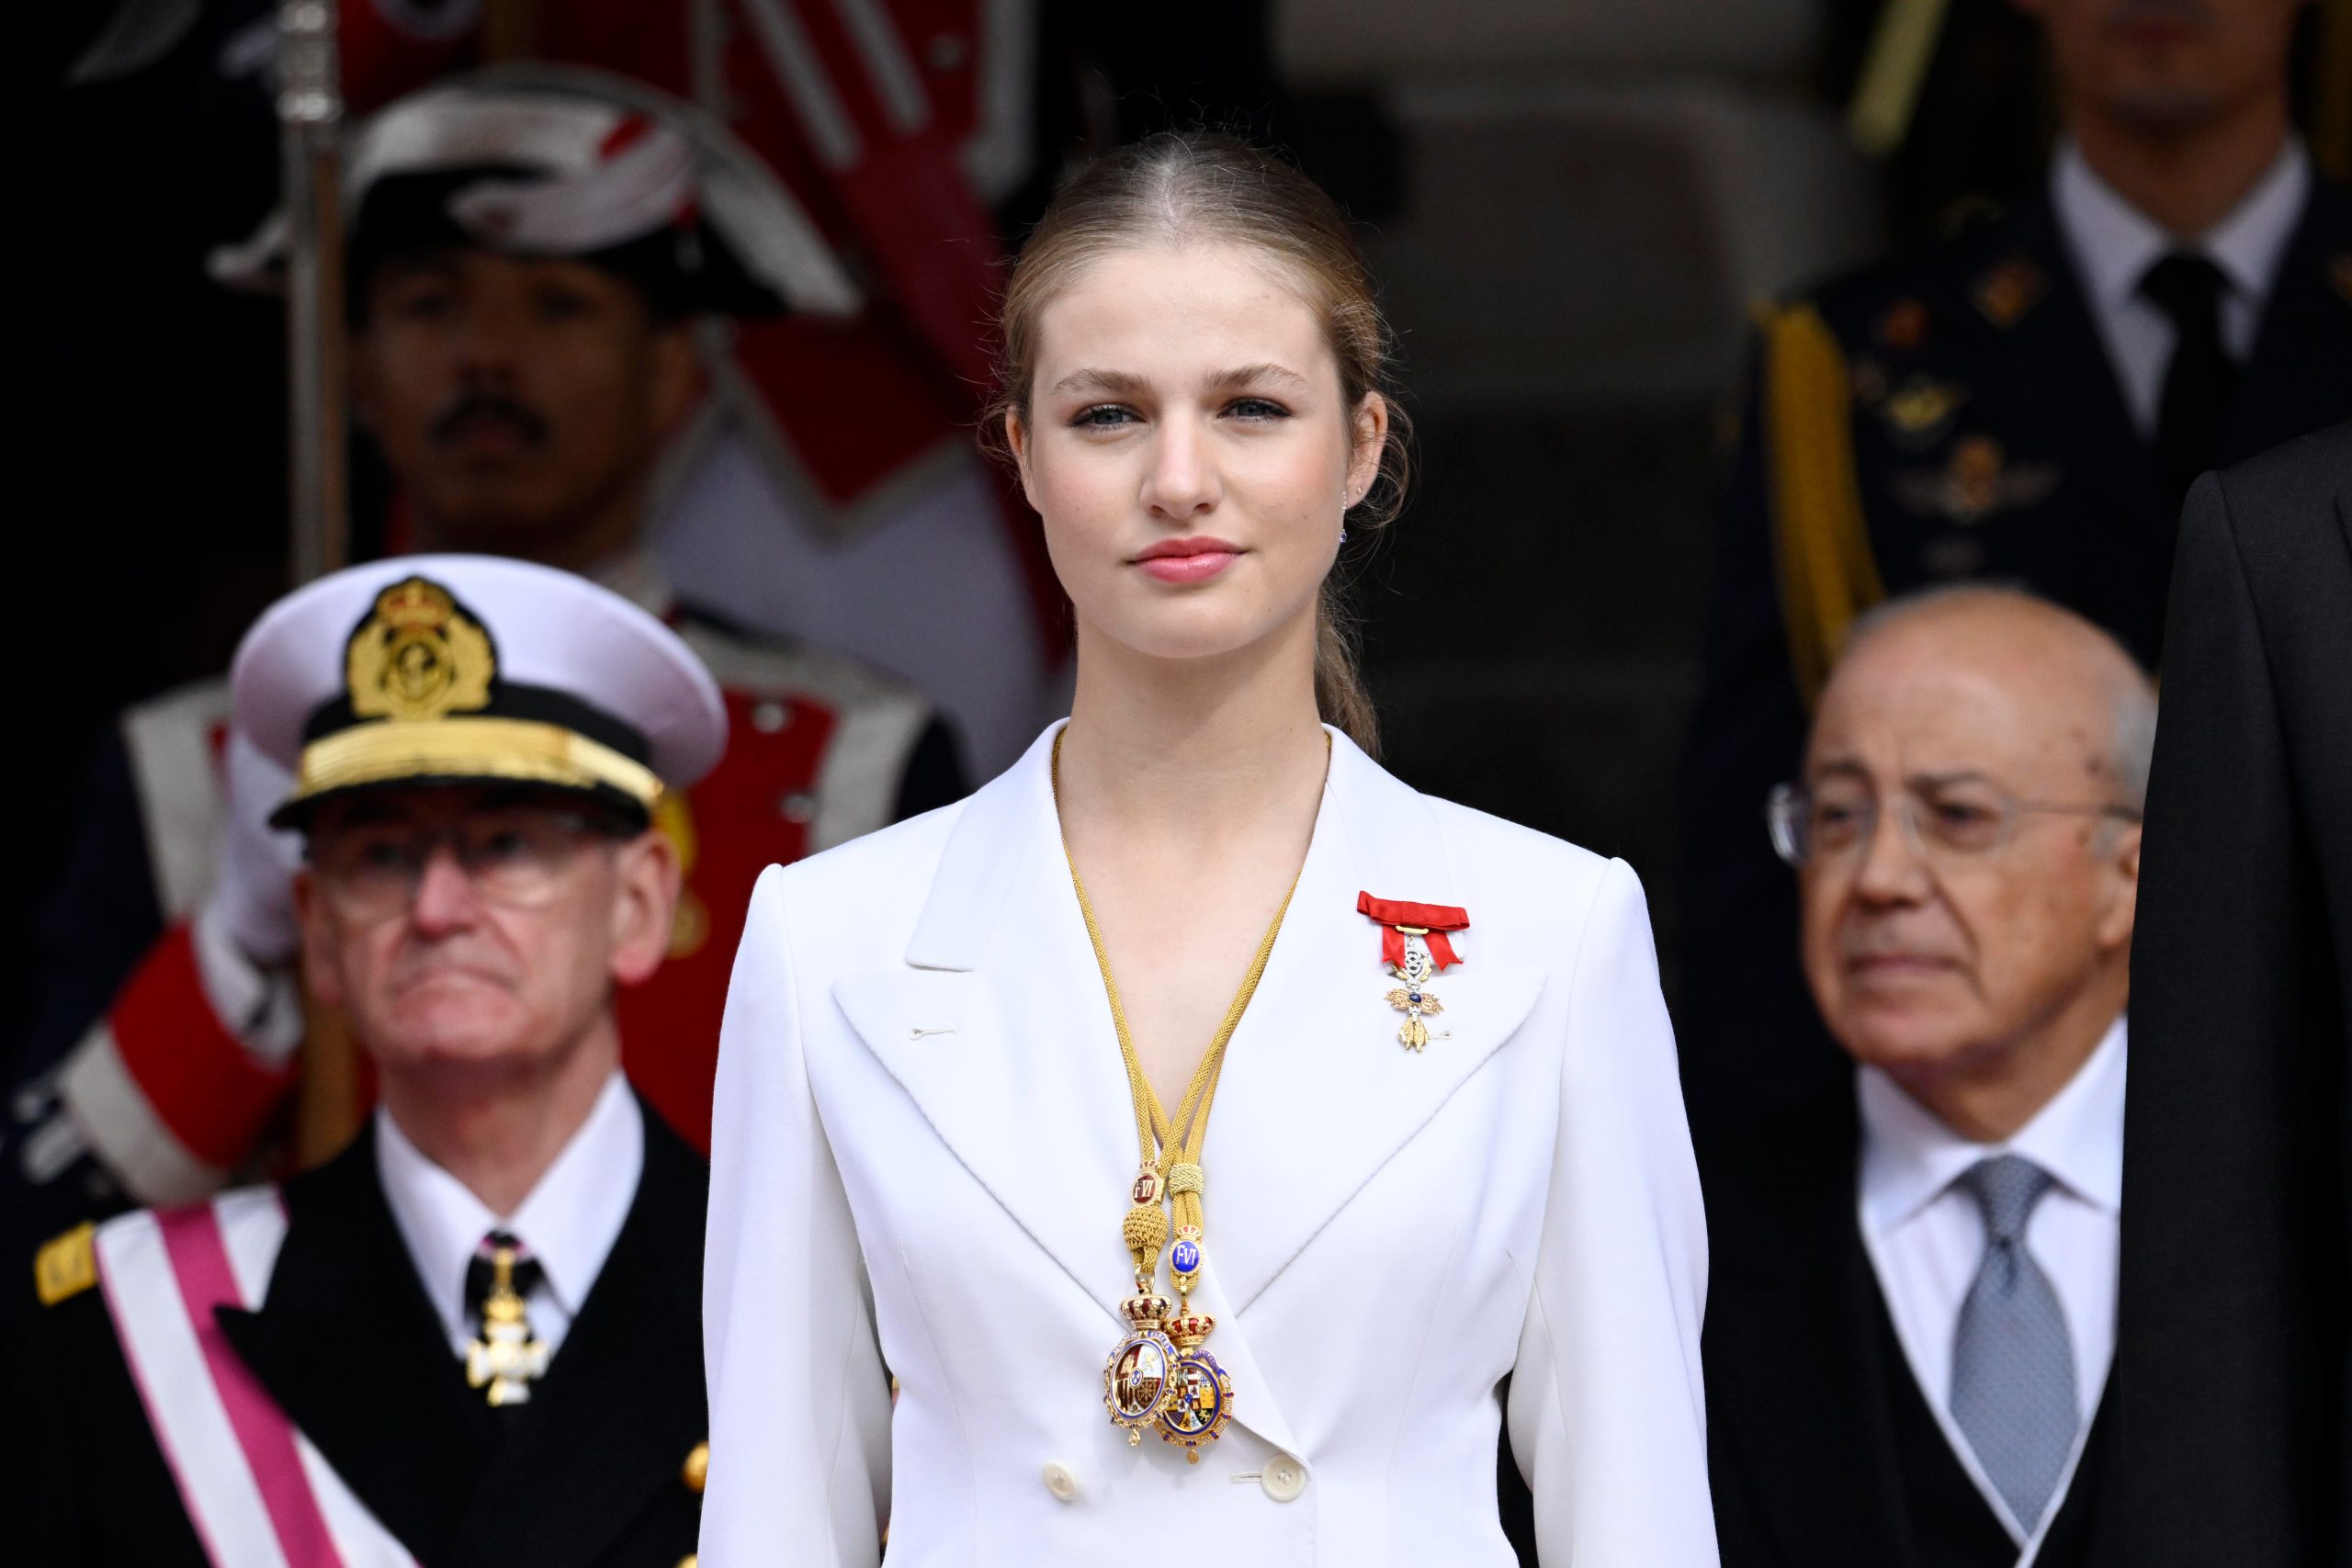 Ezért a 18 éves európai hercegnőért rajong most a világ